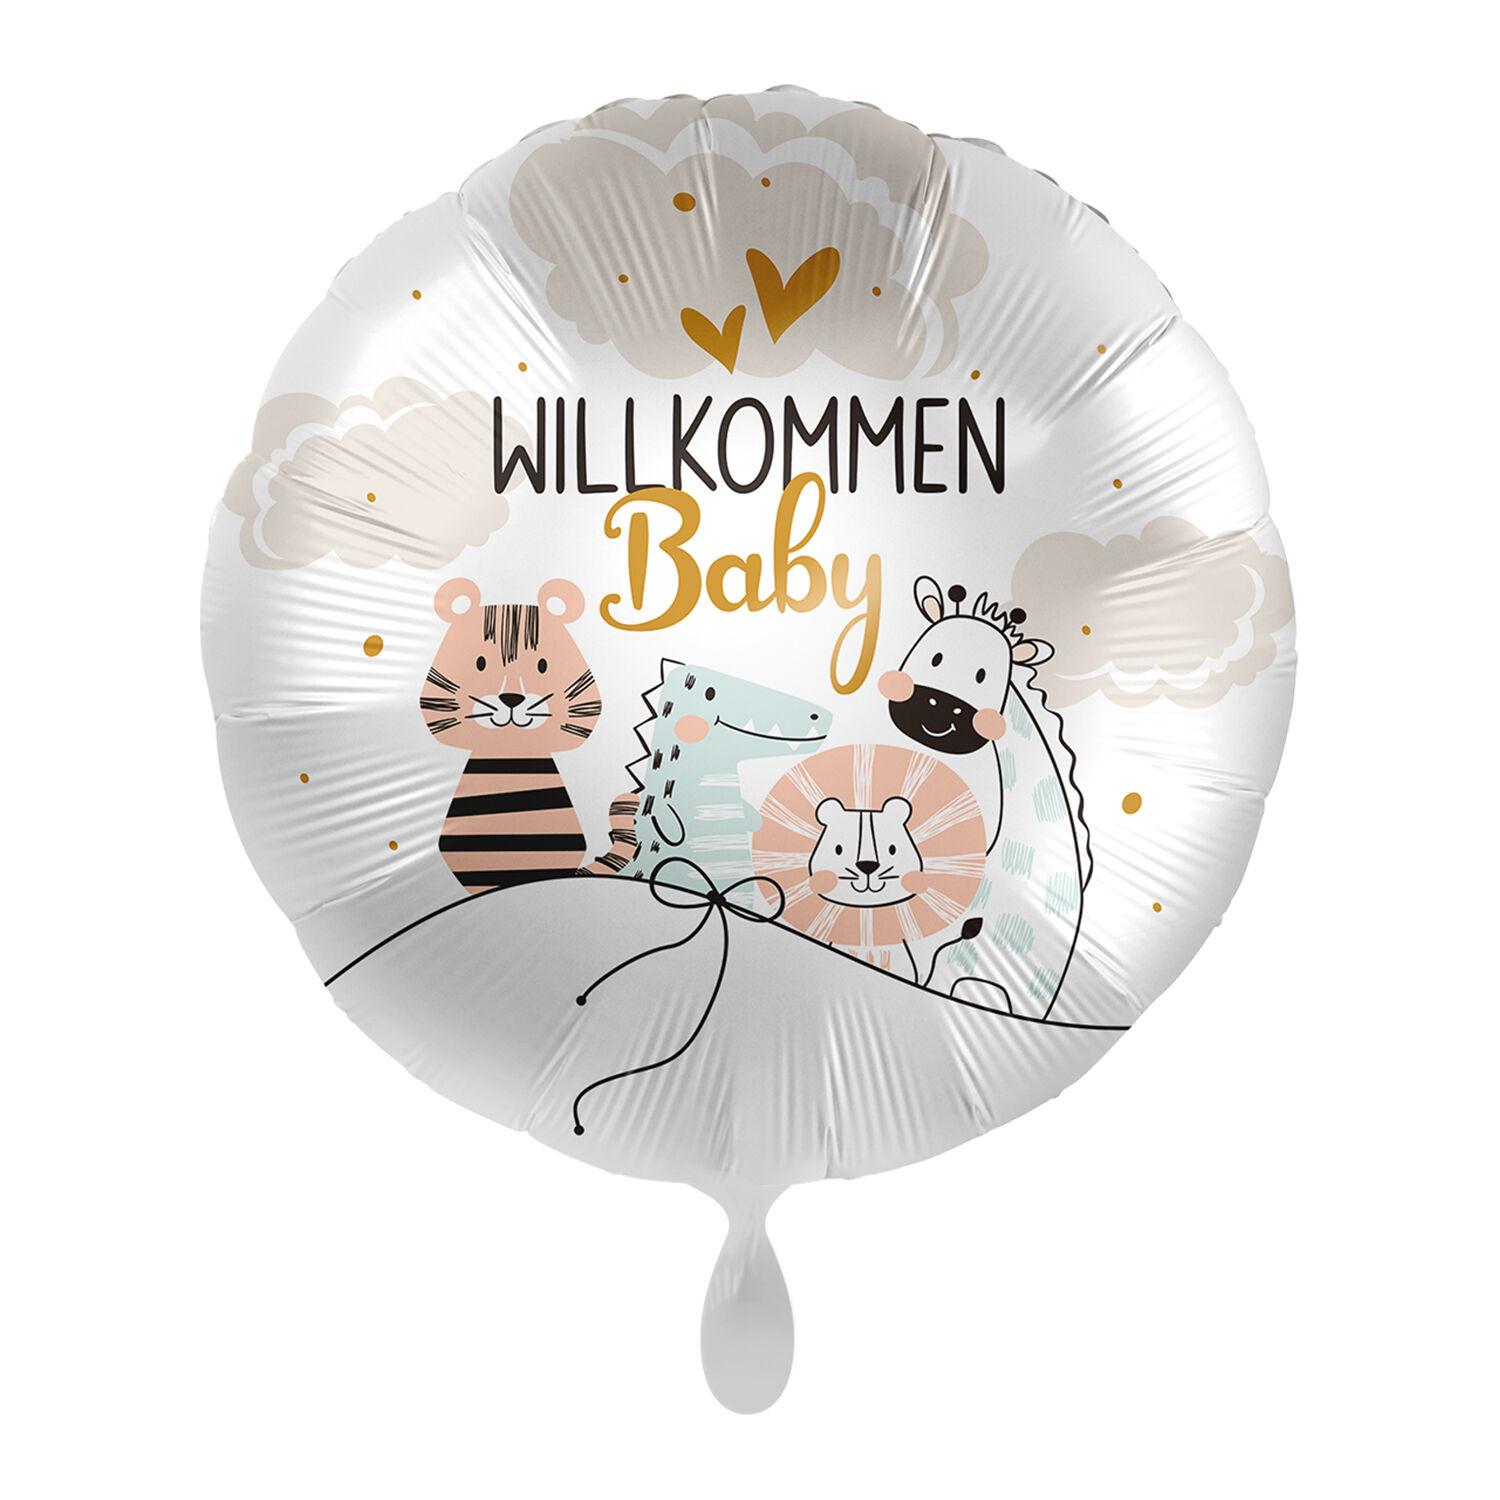 NEU Folienballon - Willkommen Baby - ca. 45cm Durchmesser